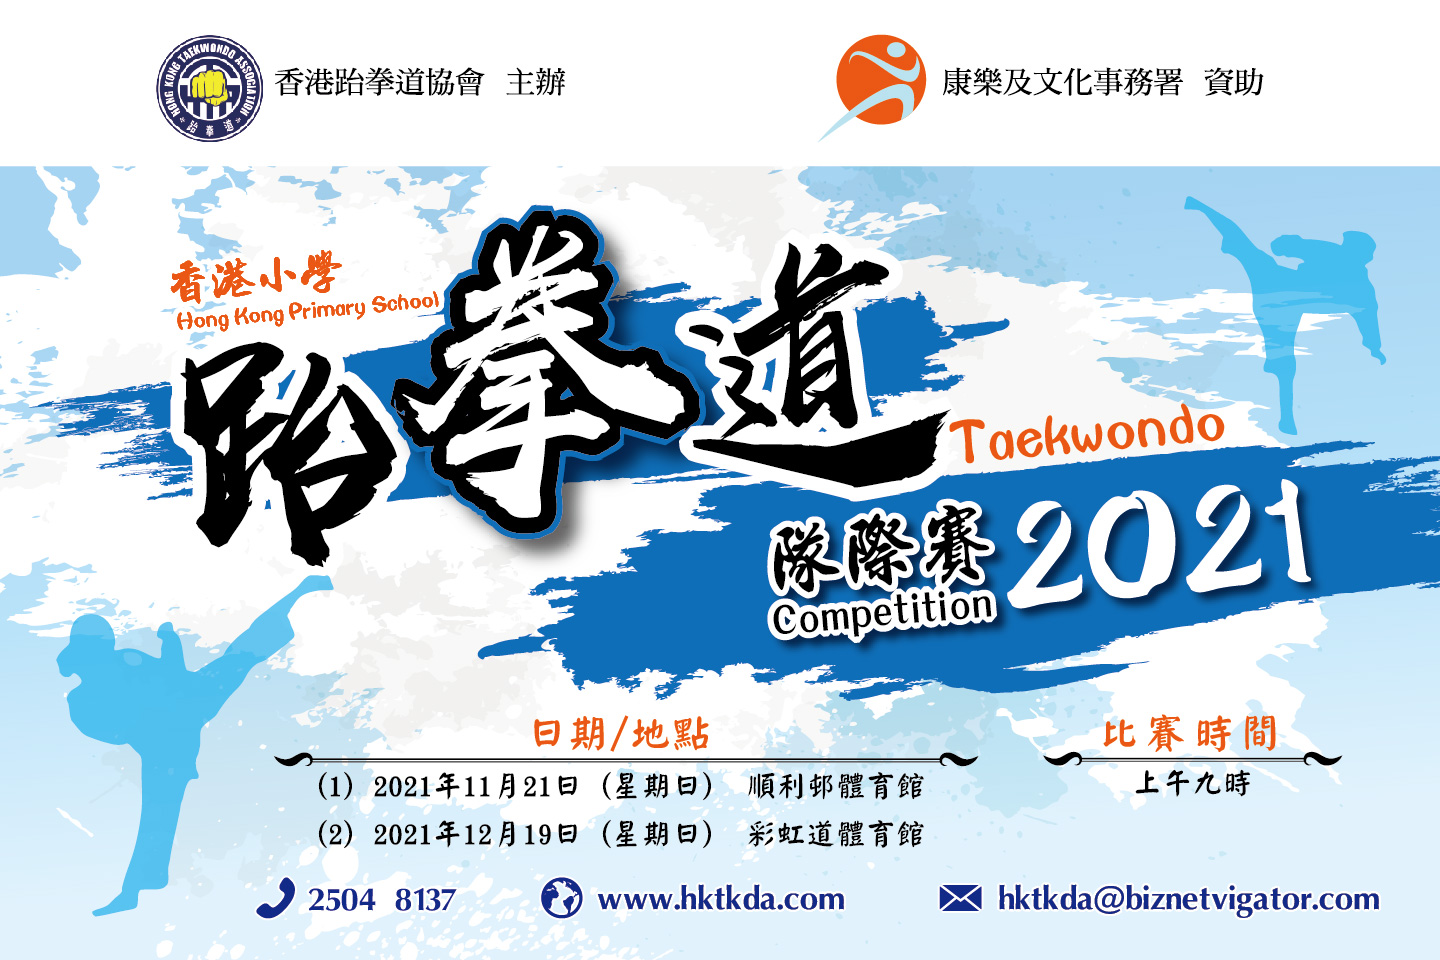 香港小學跆拳道隊際賽2021